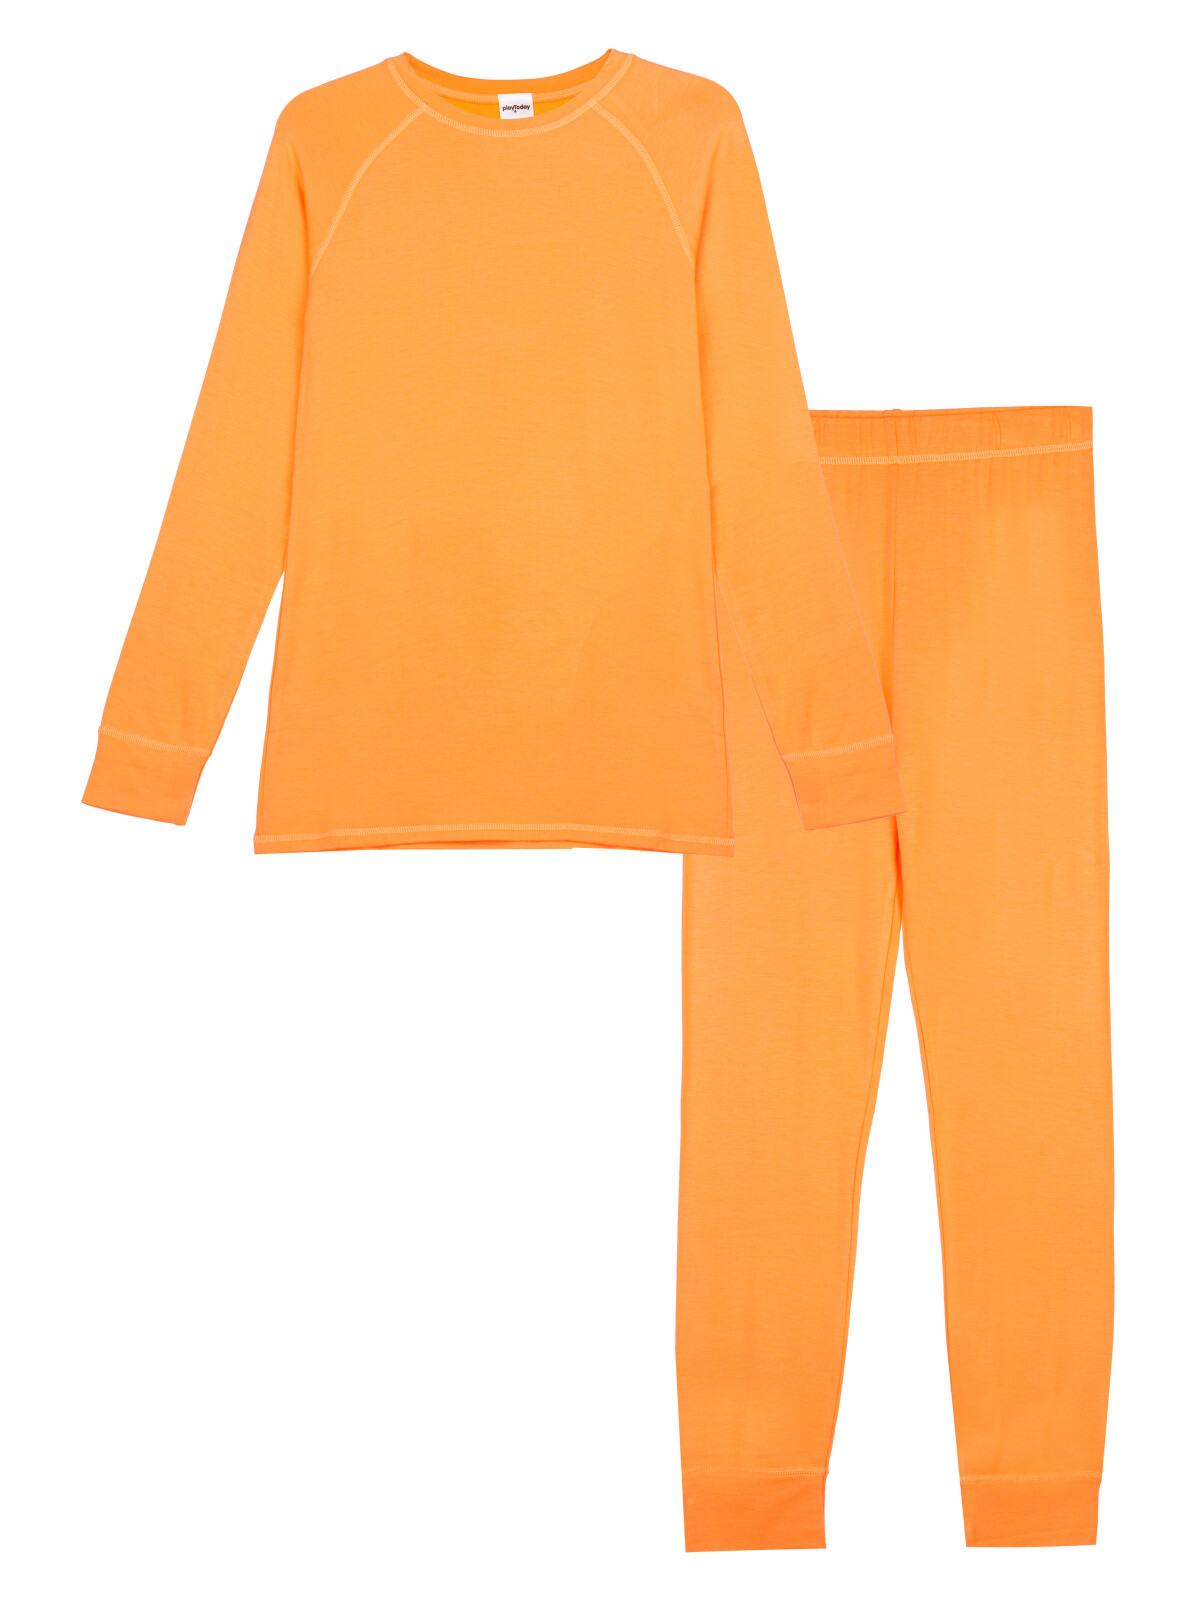 Термокомплект для девочек PlayToday: брюки, толстовка, оранжевый, 146